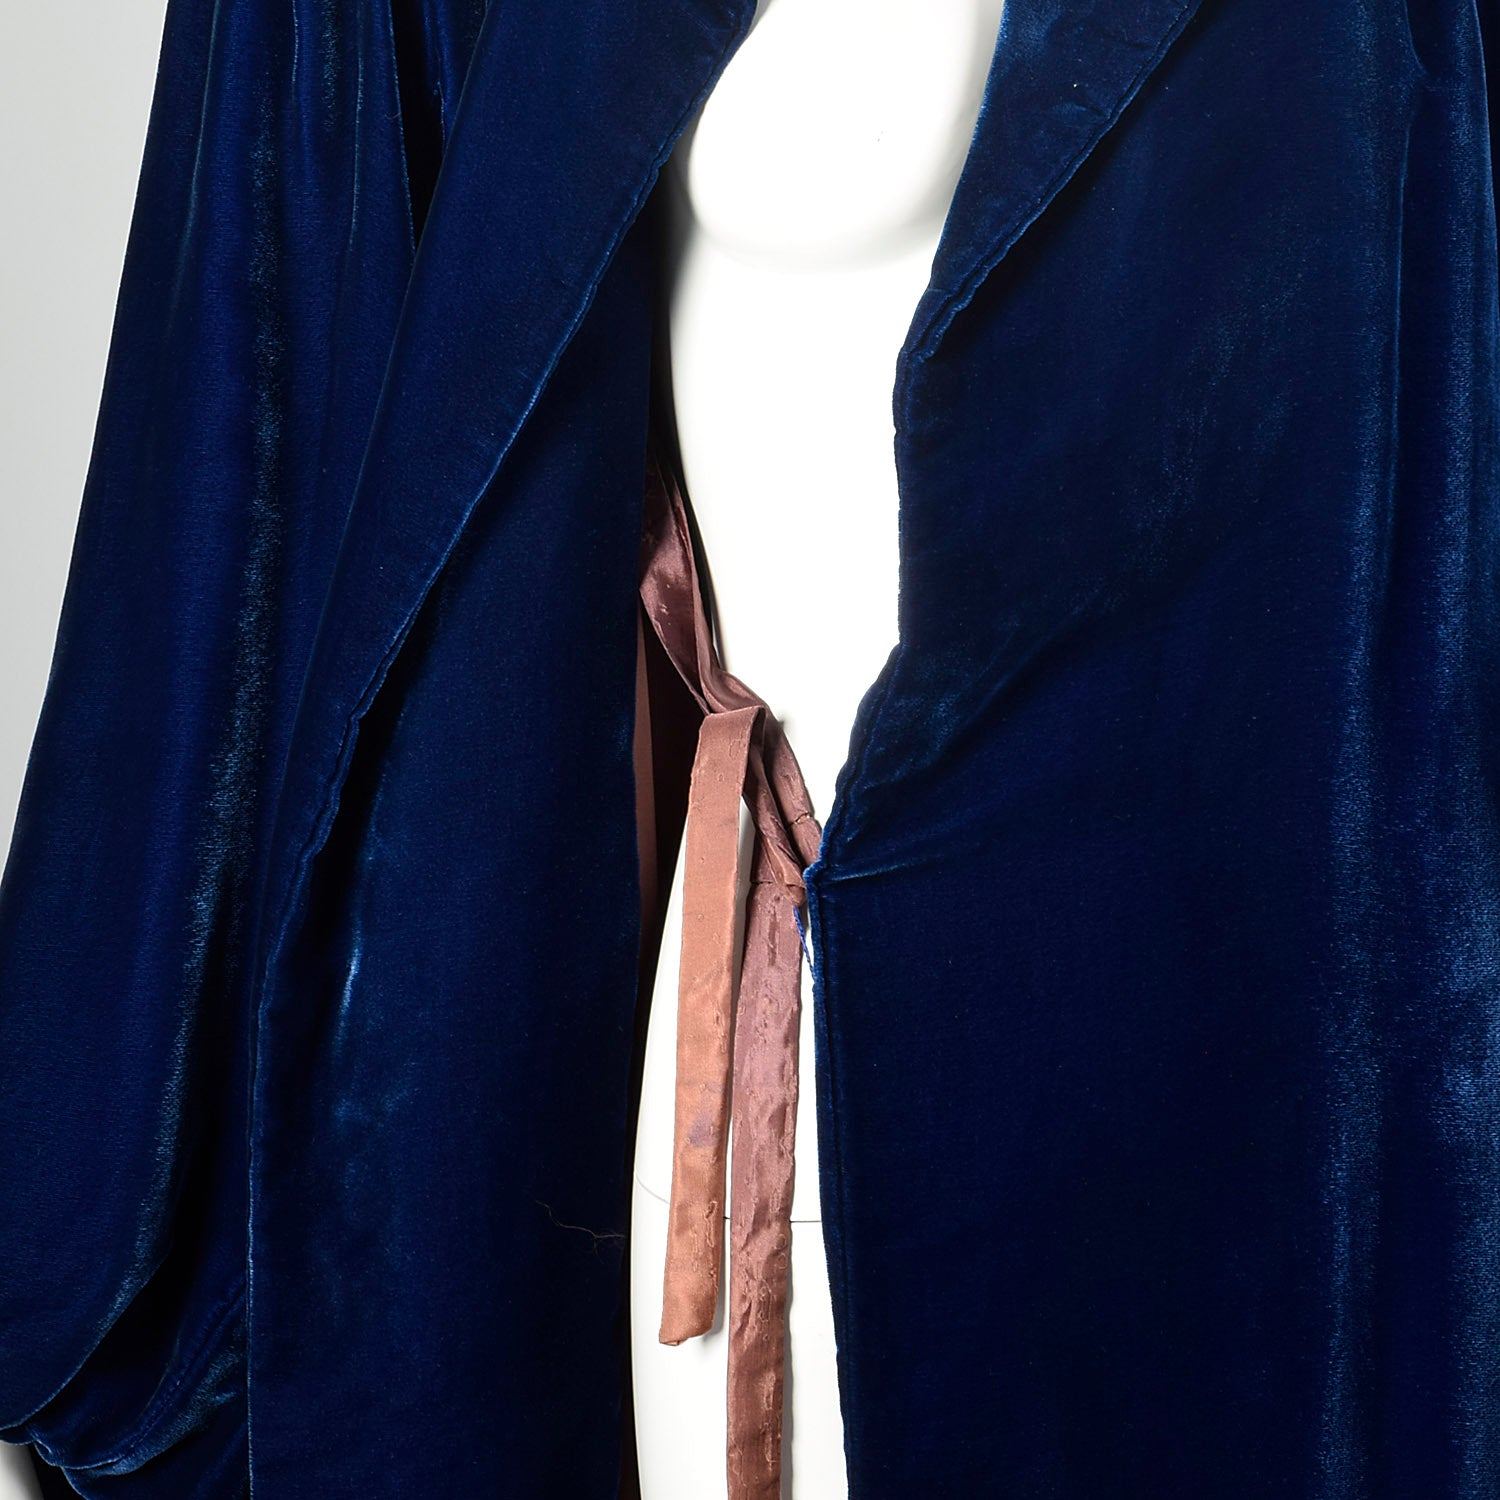 XXS 1940s Blue Velvet Opera Coat